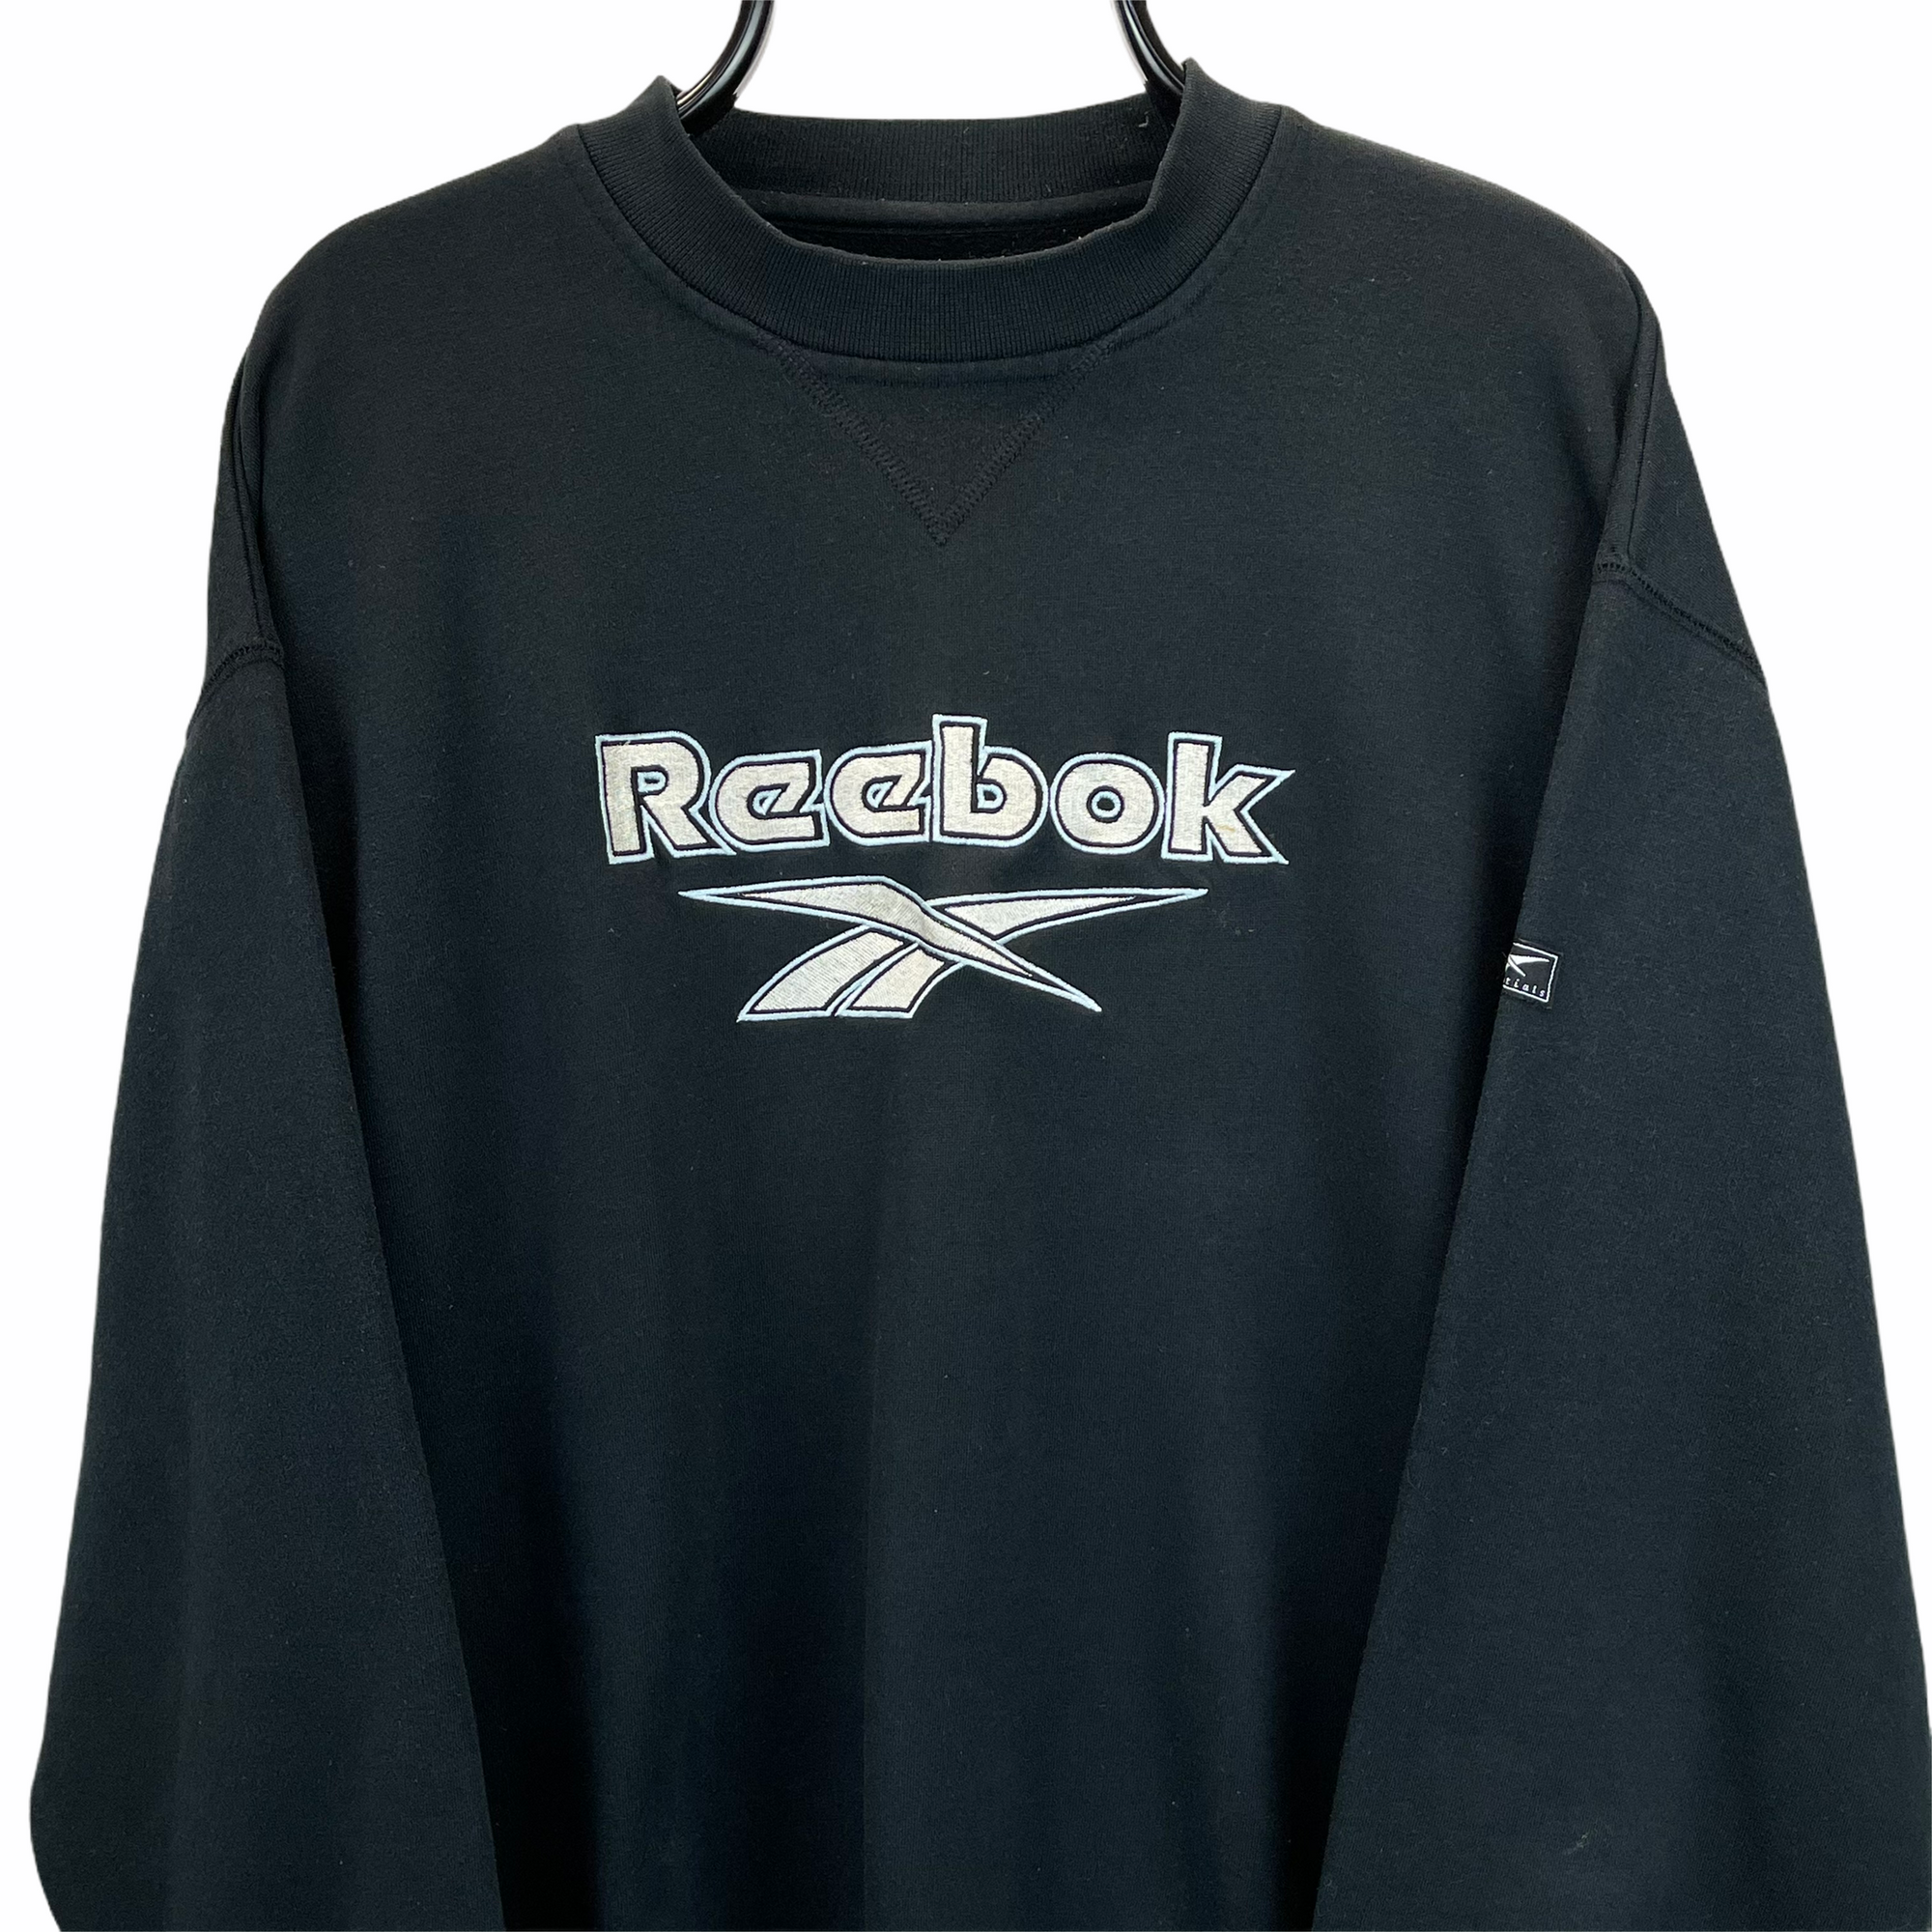 Vintage 90s Reebok Spellout Sweatshirt in Black - Men's Large/Women's XL